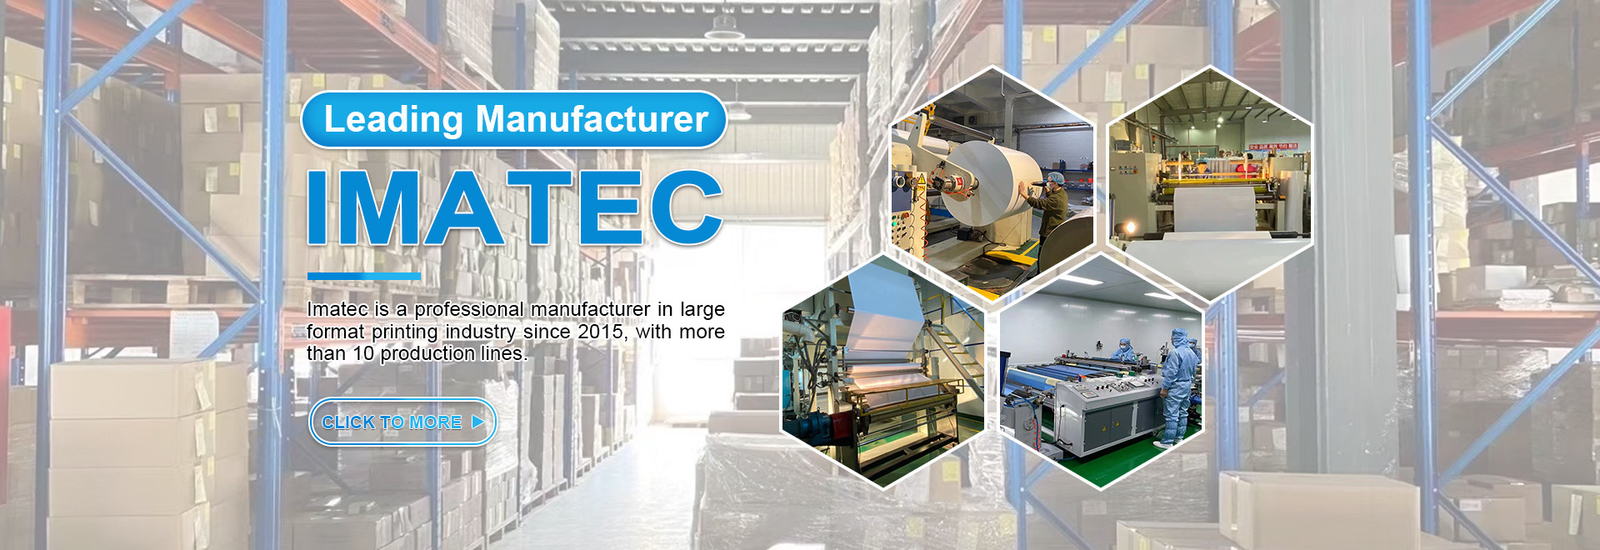 Imatec Imaging Co., Ltd. প্রস্তুতকারকের উত্পাদন লাইন